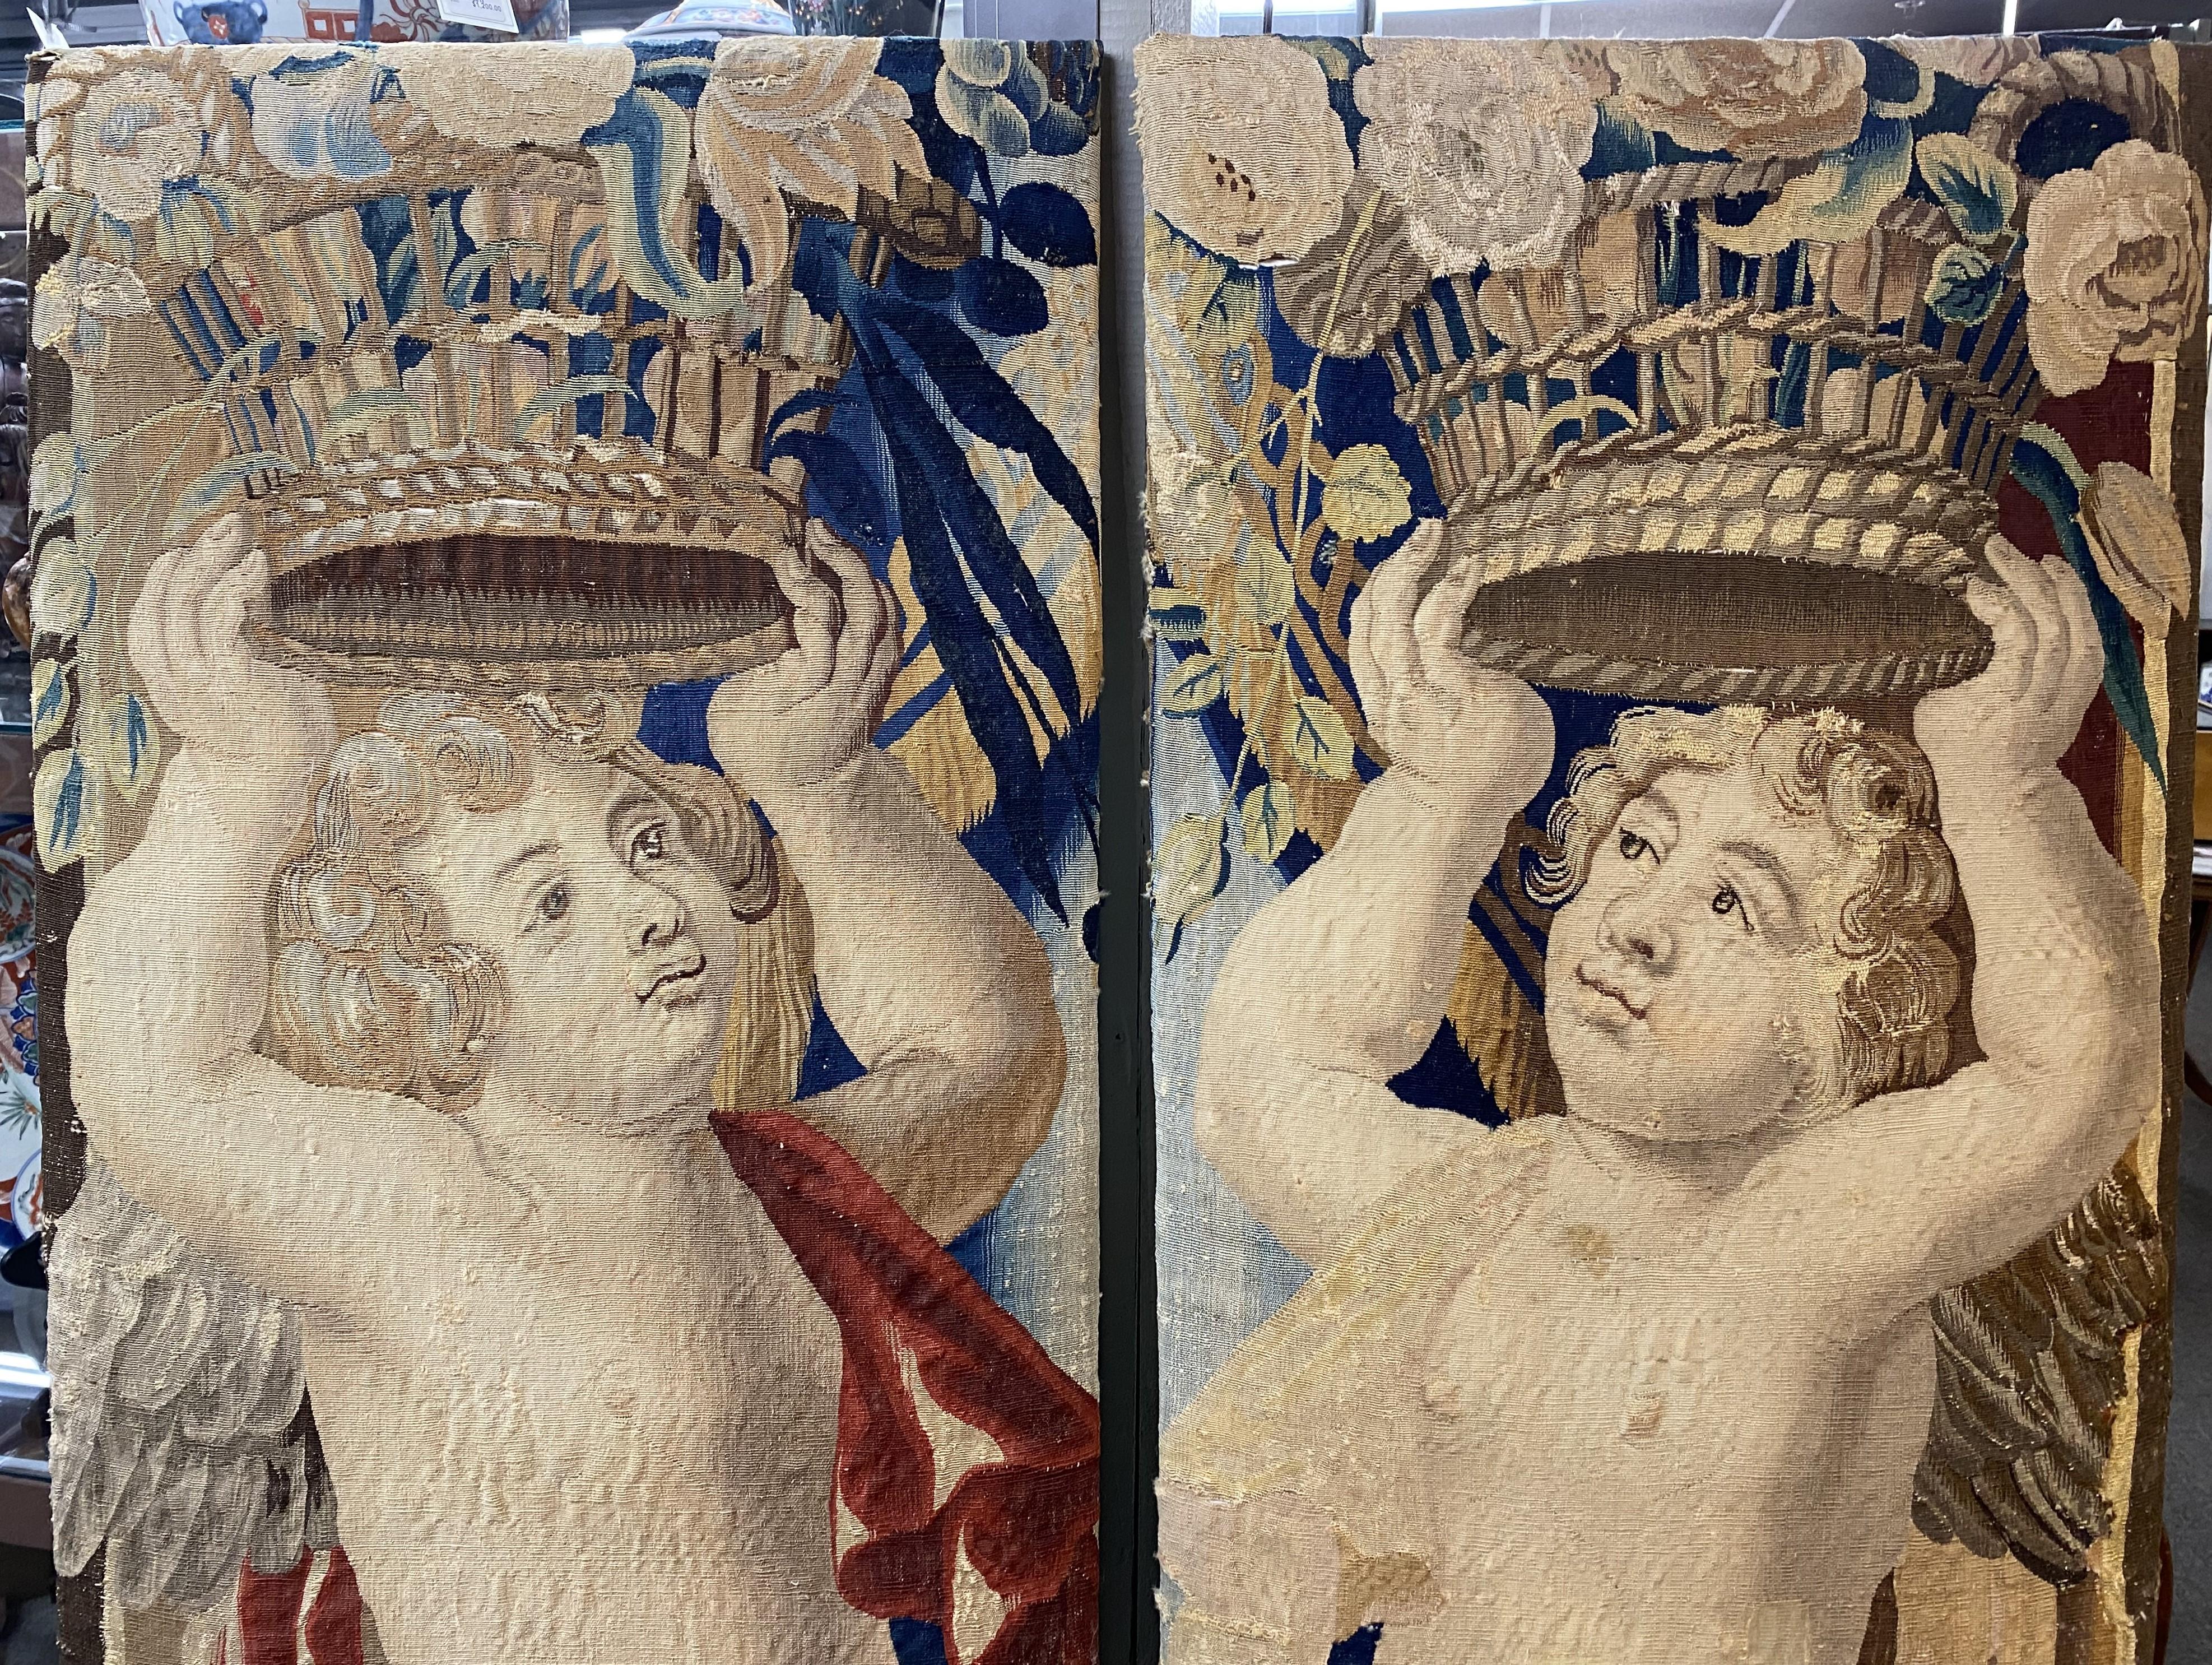 Paire de fragments de tapisserie de Bruxelles finement tissés de soie et de laine représentant des anges ou des putti portant un panier de fleurs au-dessus de leur tête. Anges opposés, l'un avec un drap d'or, l'autre avec un drap rouge. Probablement